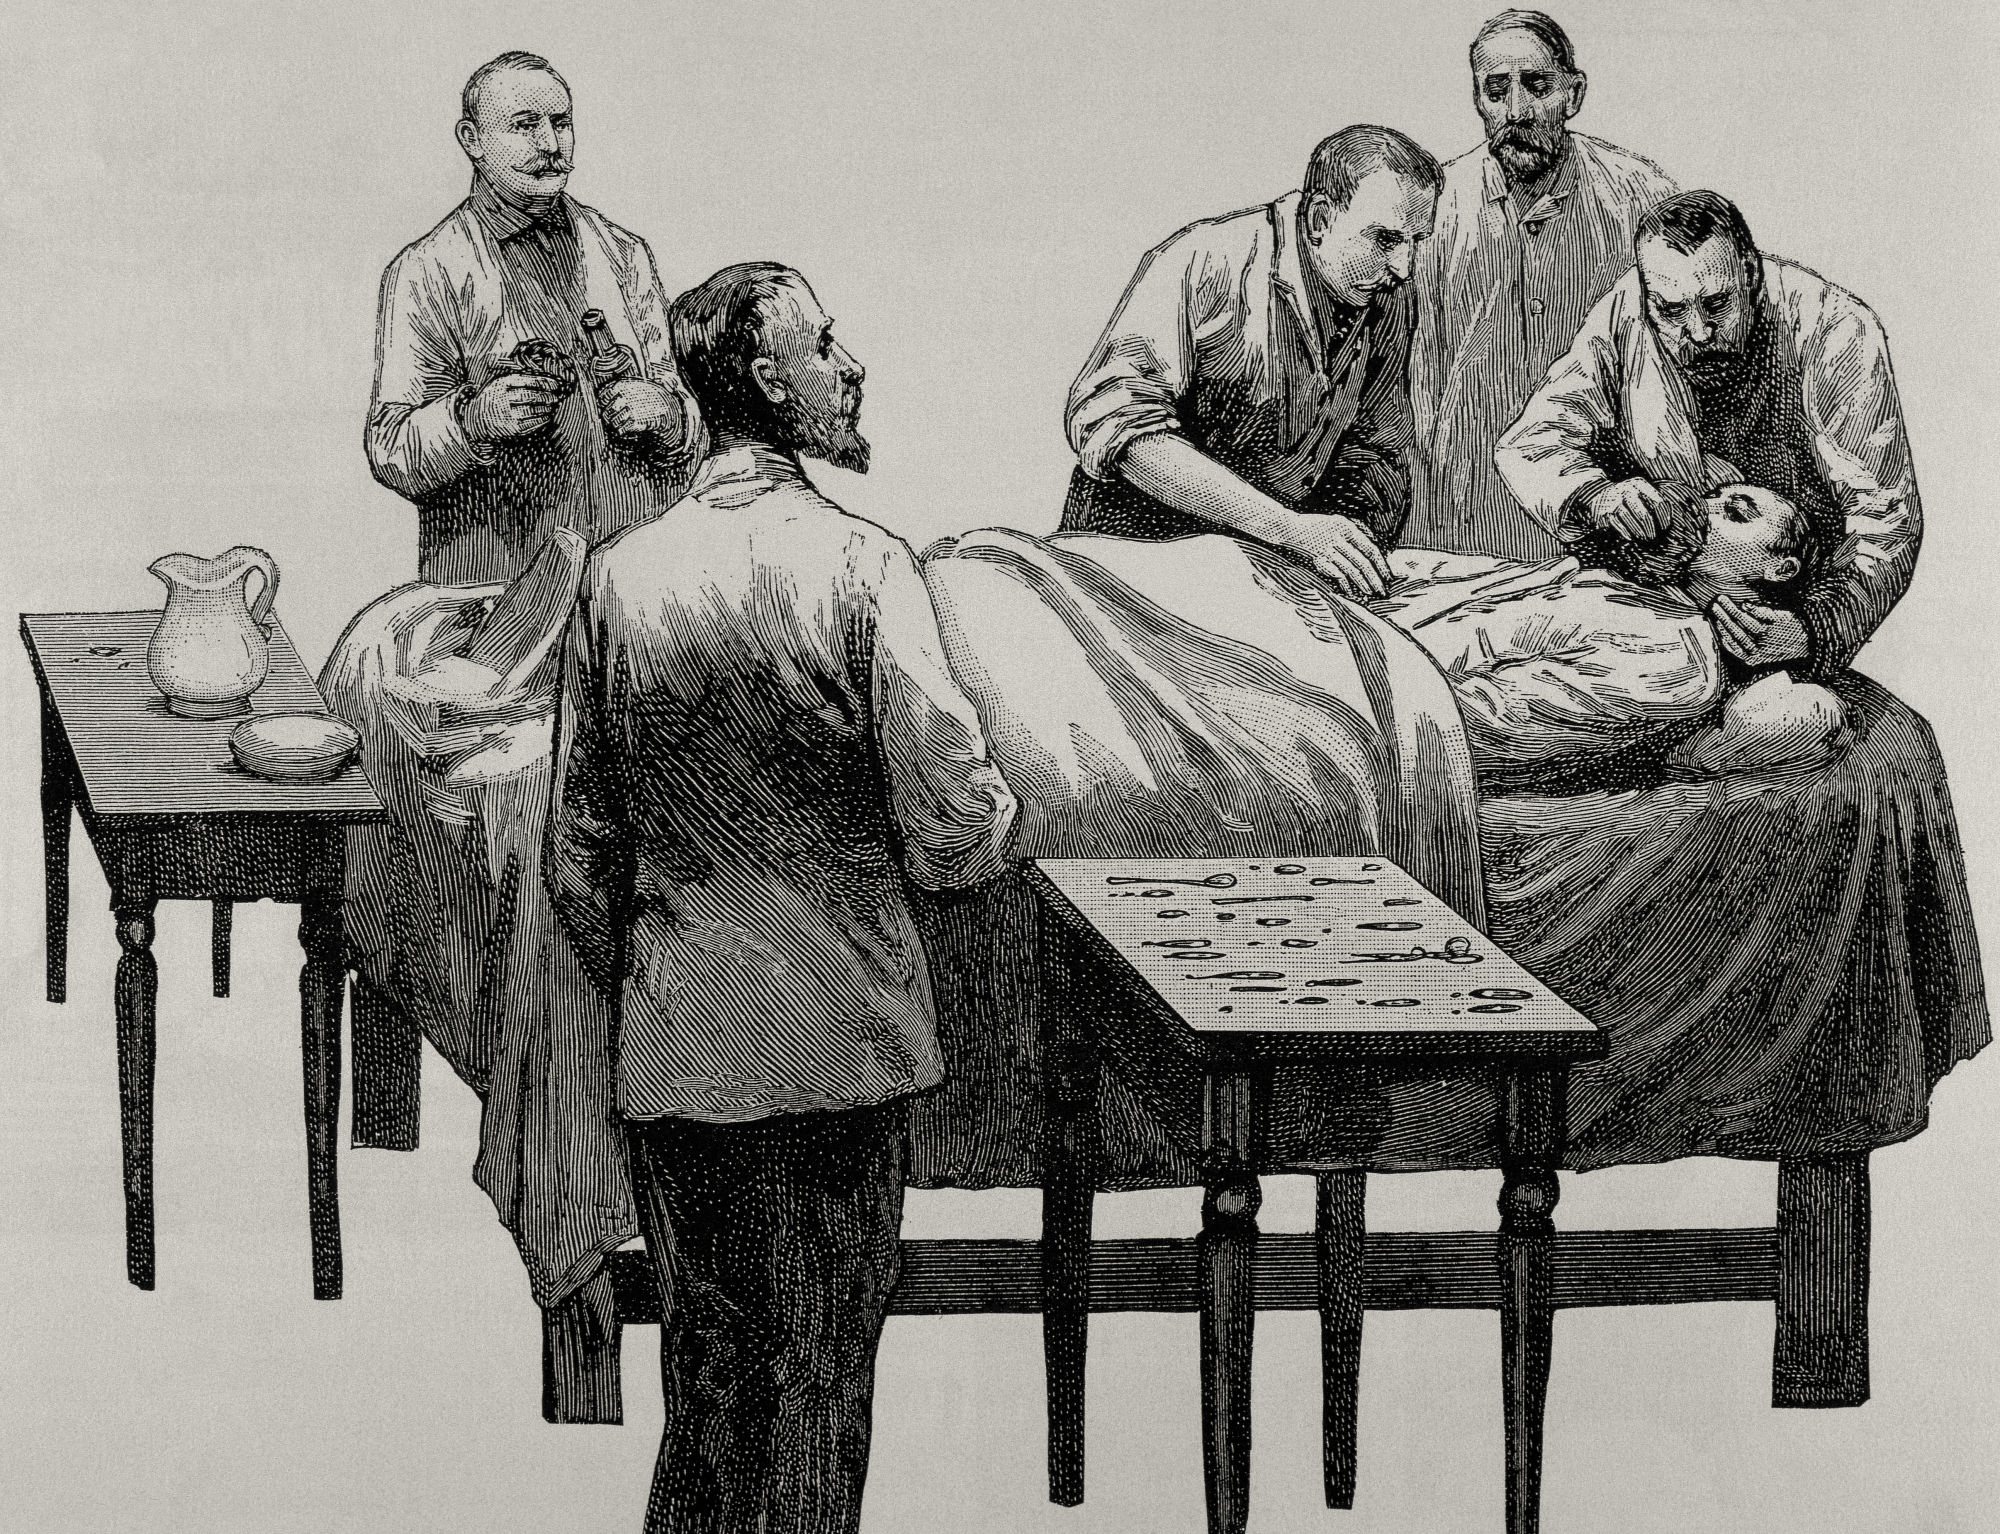 Ilustração em preto e branco, do século 19, de um homem segurando a cabeça de uma pessoa deitada em uma cama, enquanto a outra mão coloca um inalador cobrindo o nariz e a boca do paciente. Ao redor deles, há outros quatro homens e duas mesas de apoio.